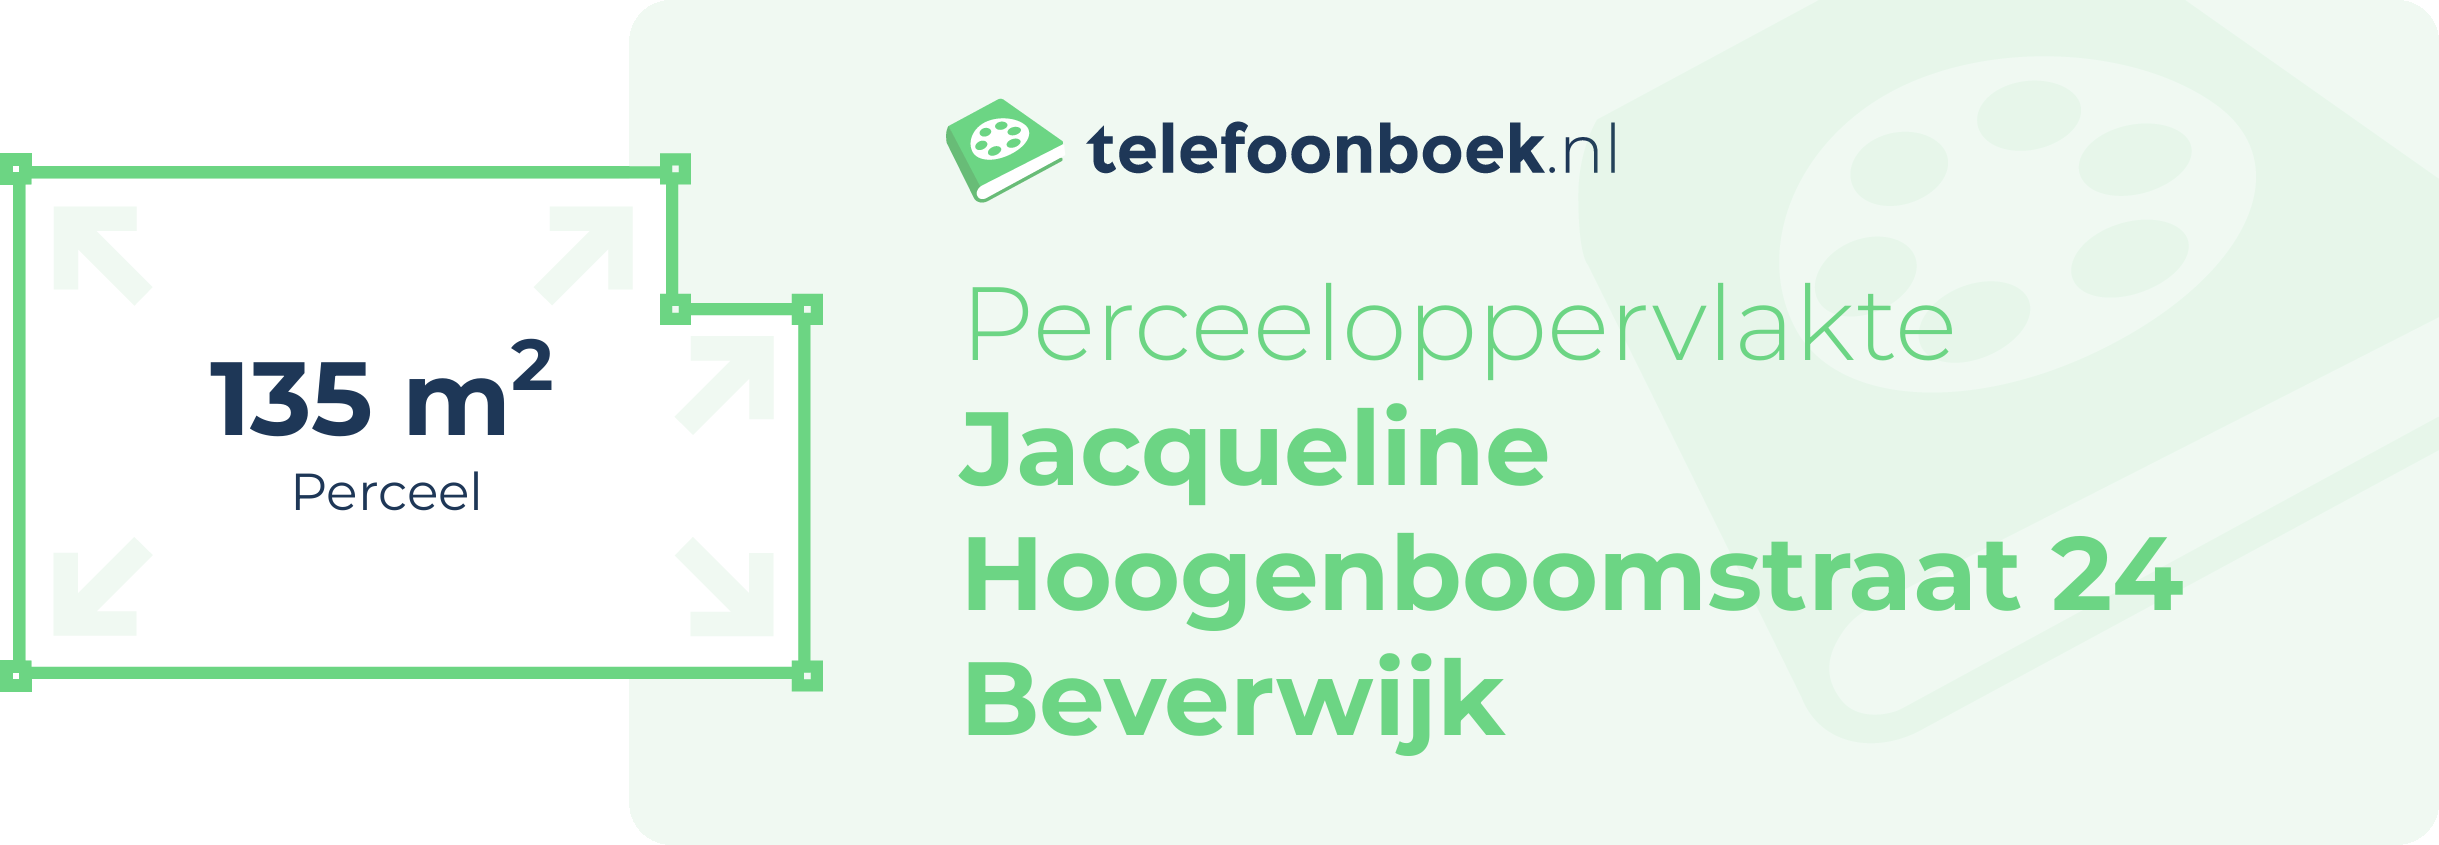 Perceeloppervlakte Jacqueline Hoogenboomstraat 24 Beverwijk